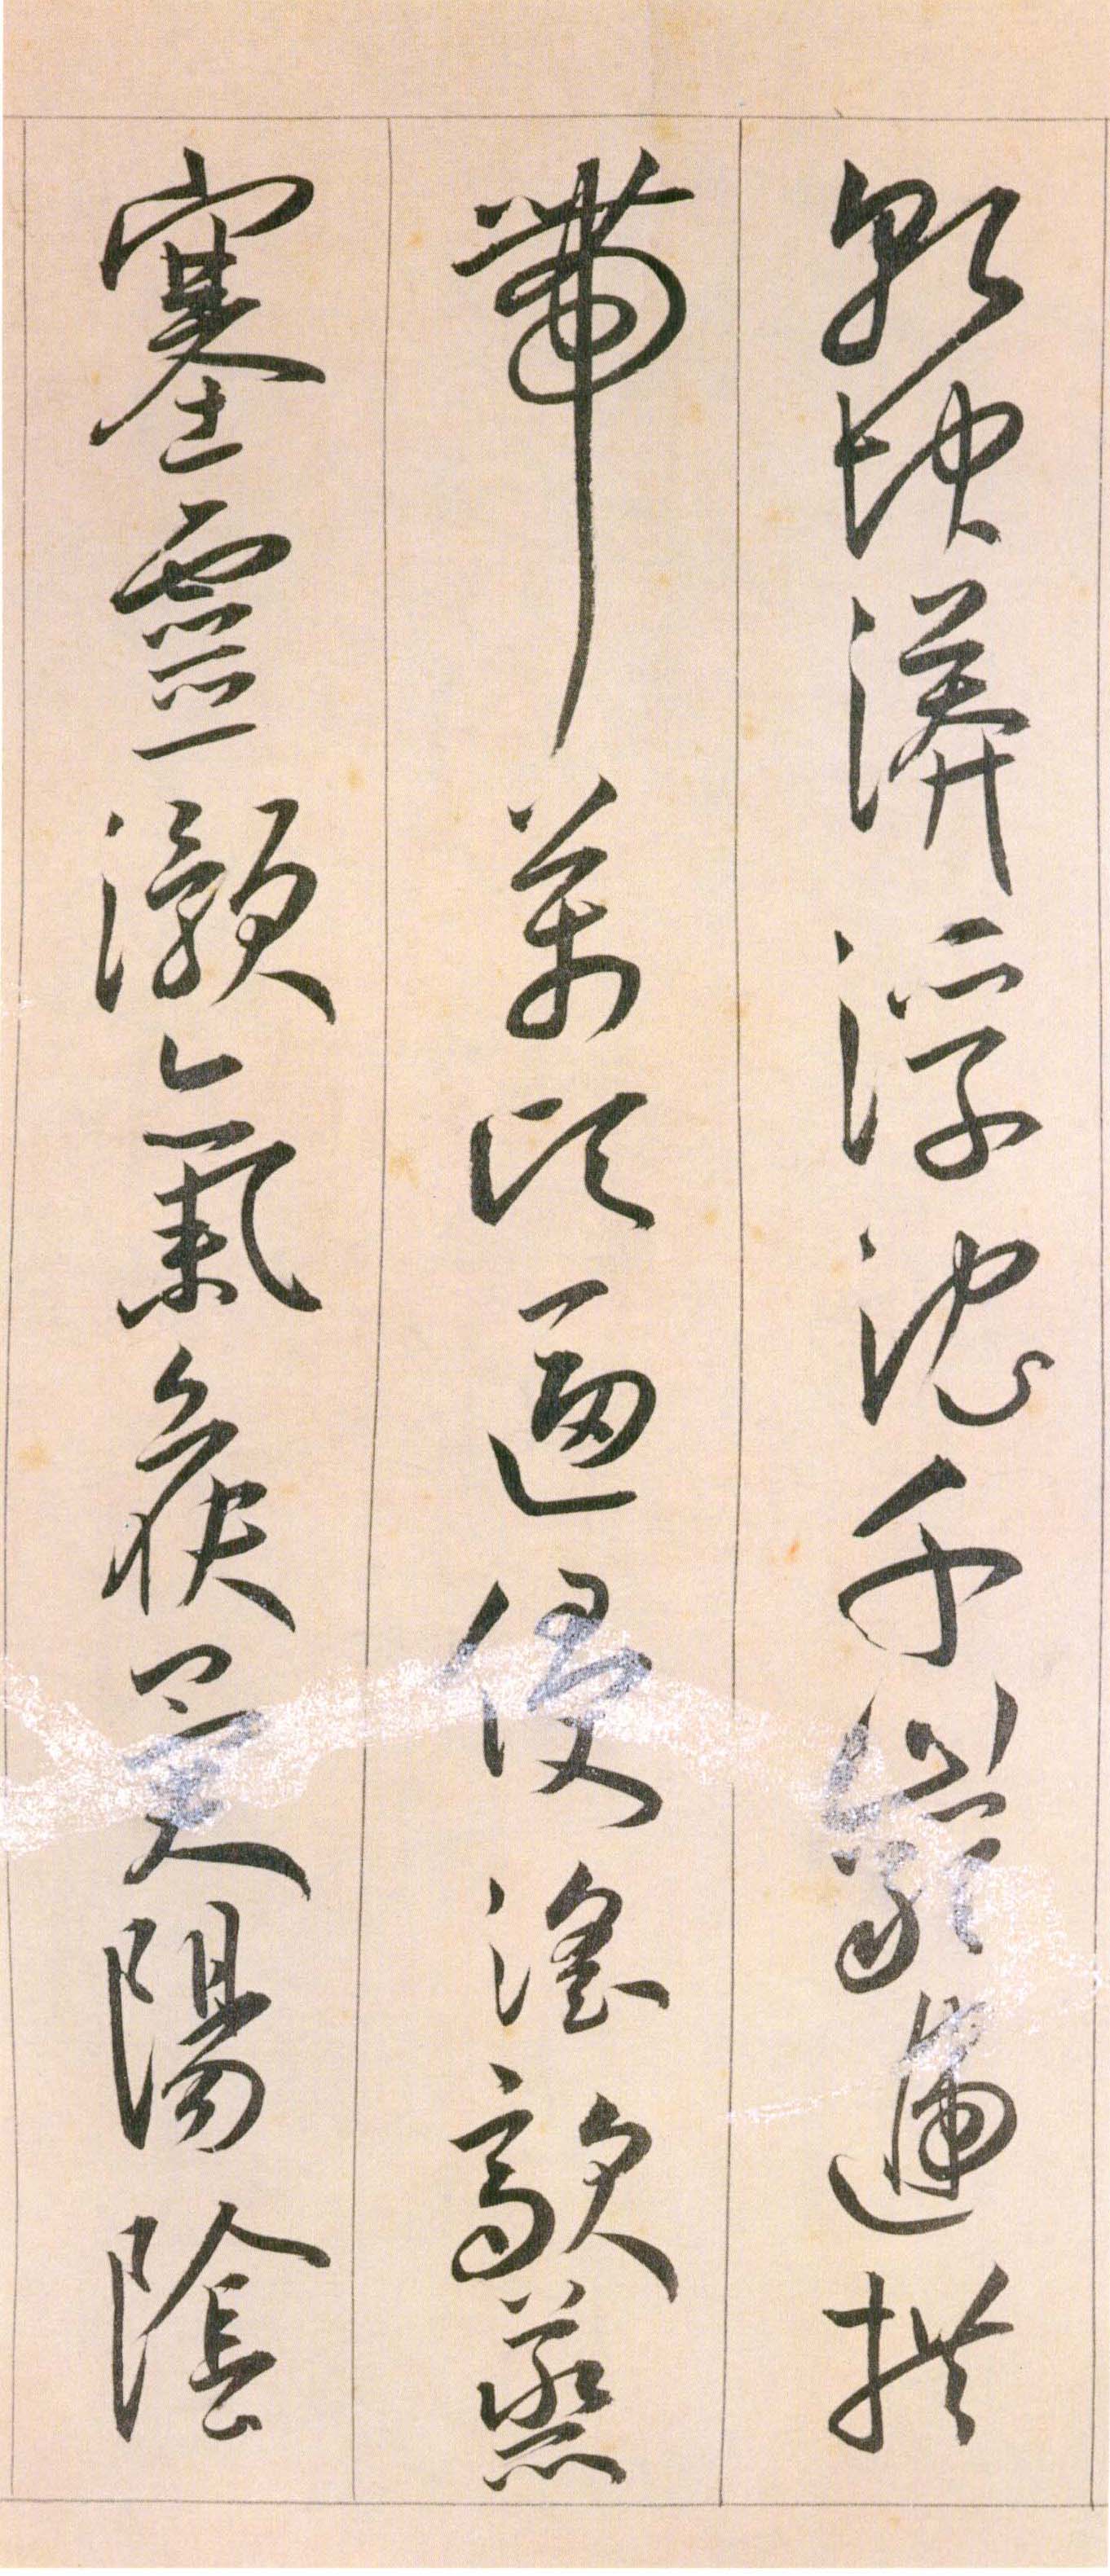 王宠《自书游包山诗》卷-天津艺术博物院藏(图22)